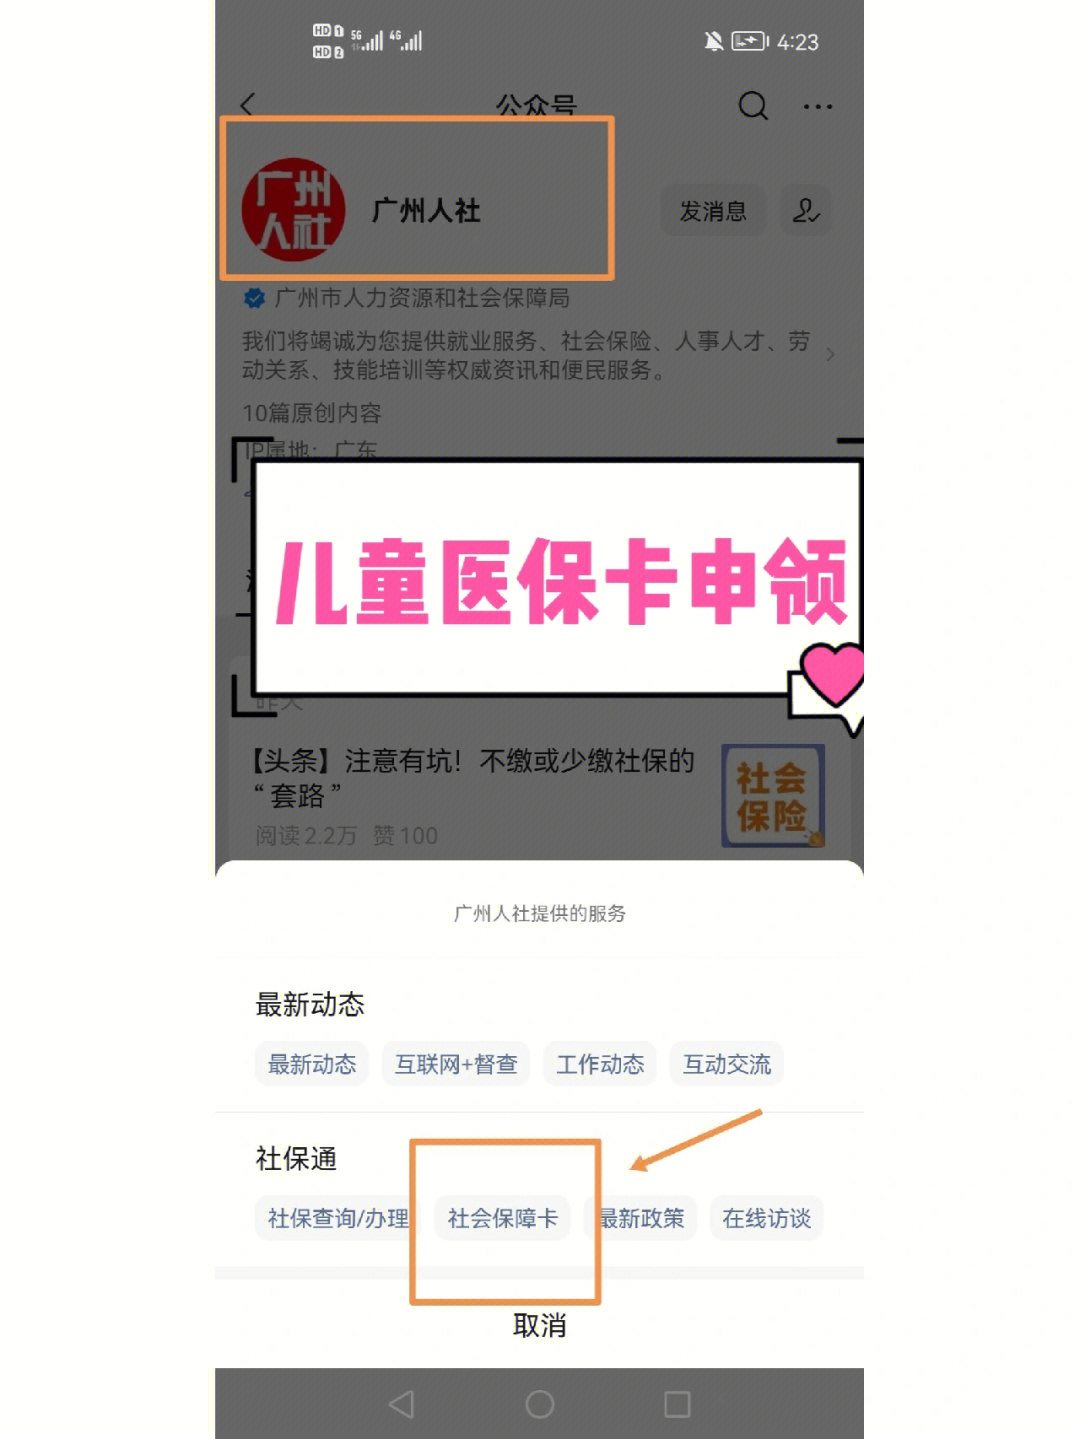 儿童医保卡申领流程:78step1:关注广州人社微信公众号